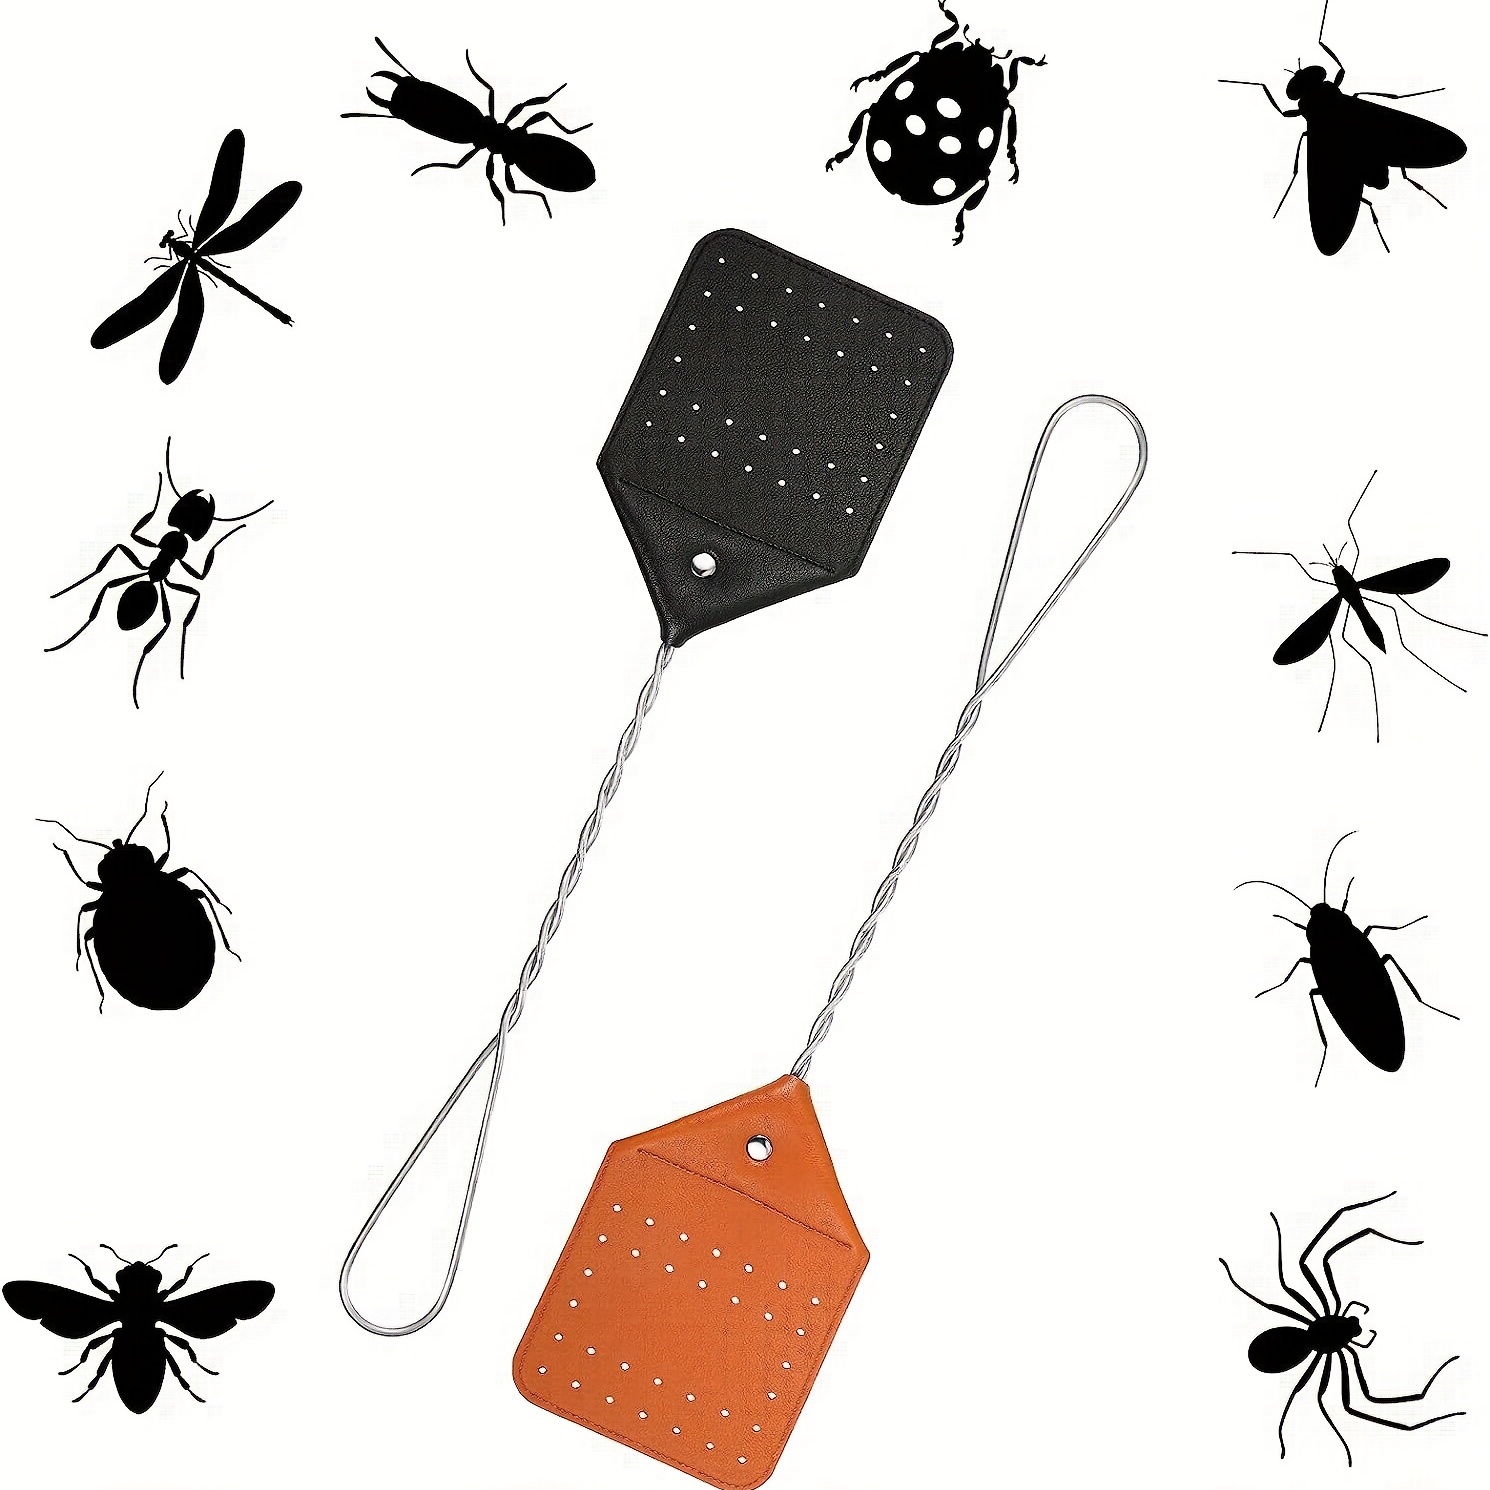 Tapettes à mouches en cuir et bois de hêtre - Leather fly swatters